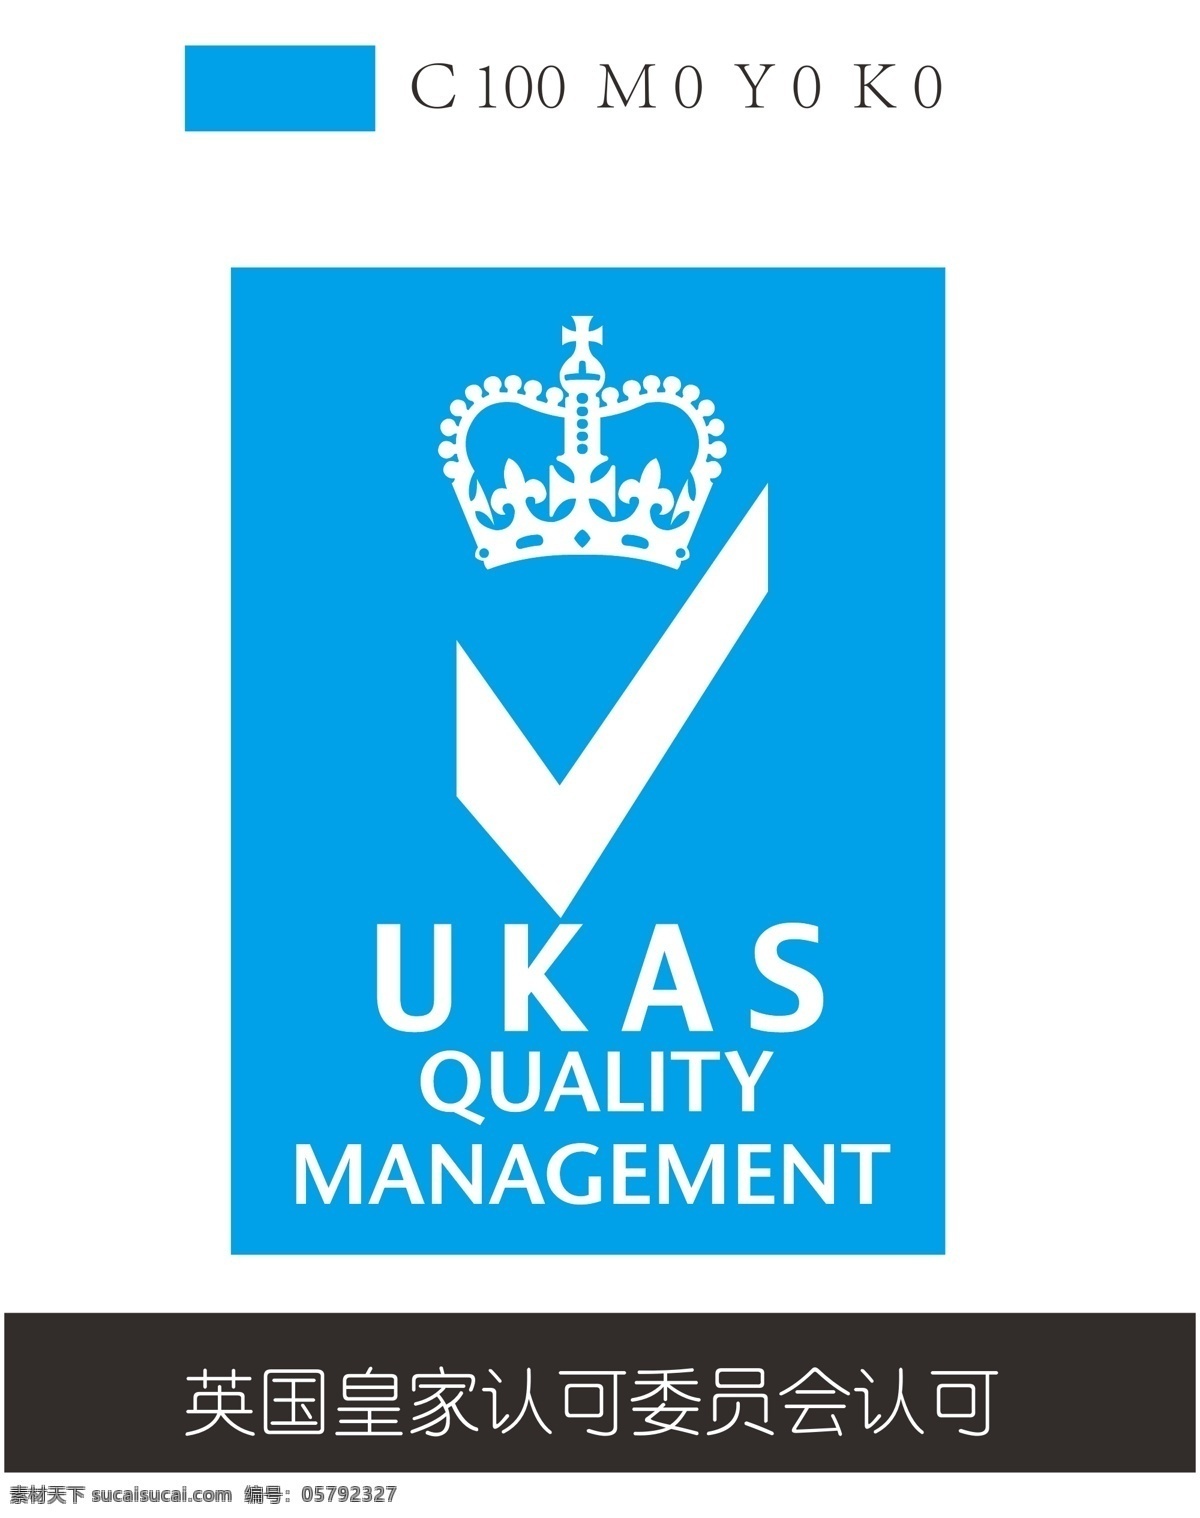 ukas 英国 皇家 认可委 公共标识 皇冠 对勾 quality 公共标识标志 标志图标